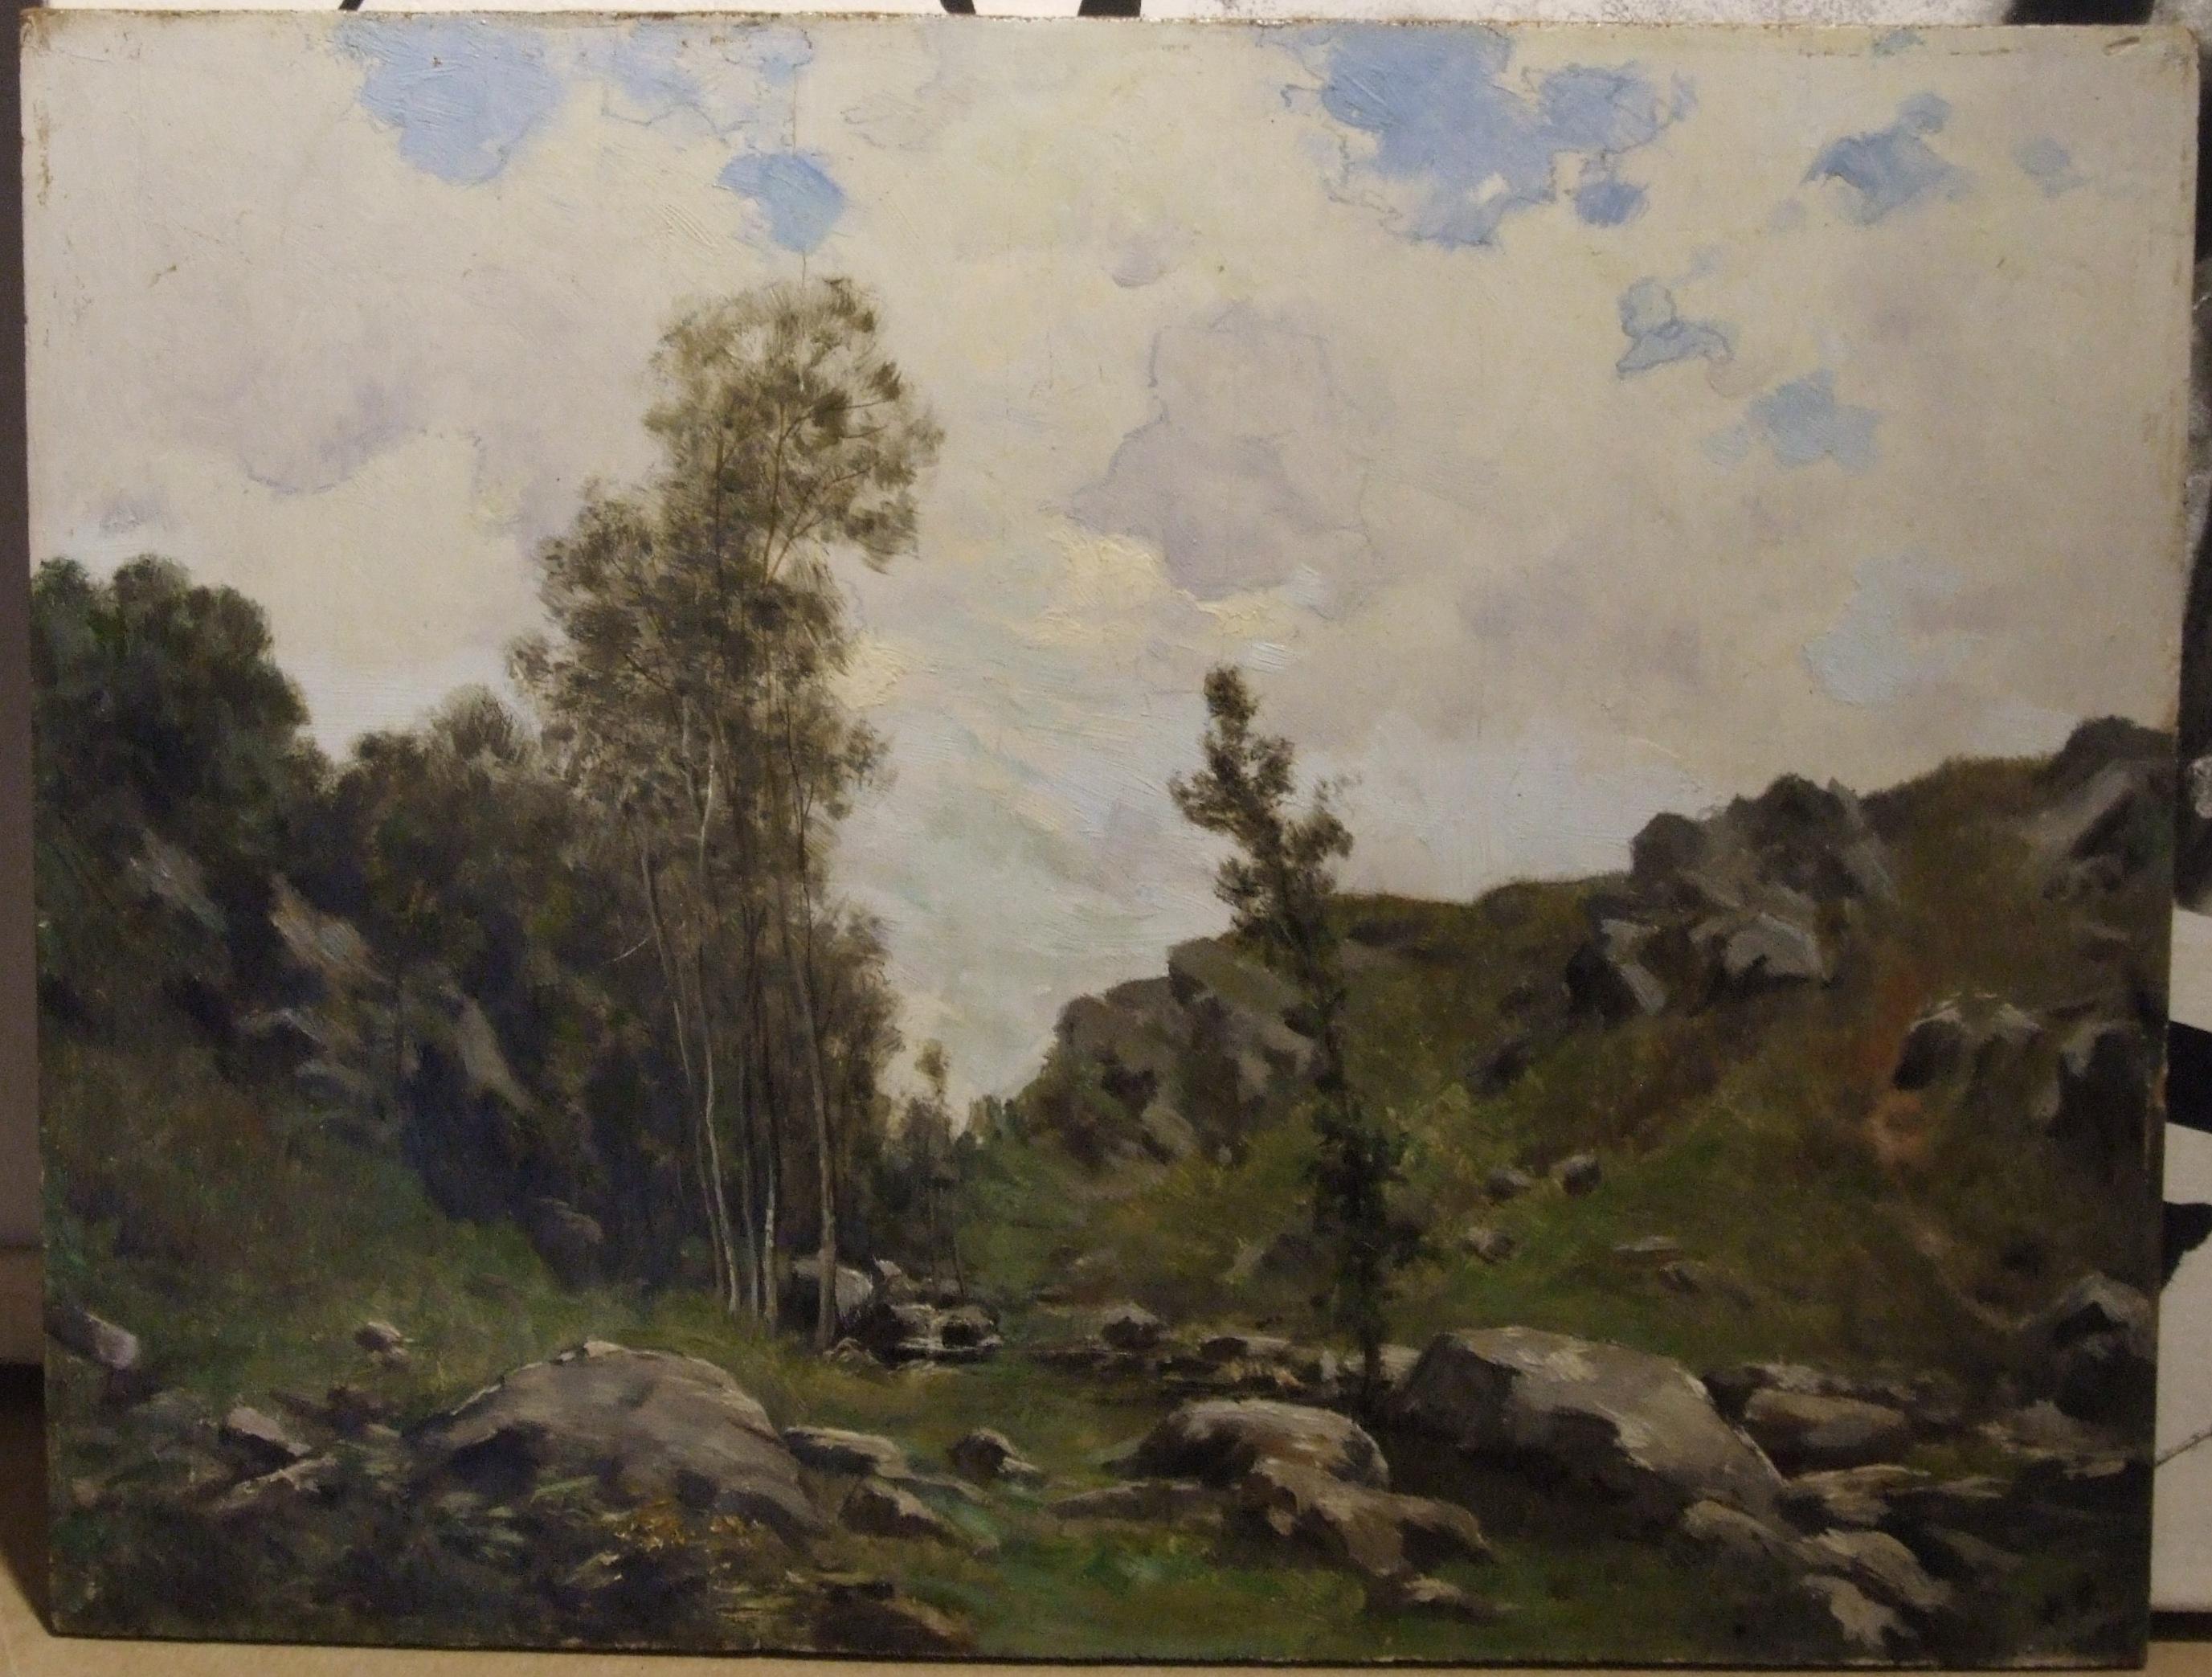 Leon Joubert Landscape Painting - Mountain landscape, XIX c. - Oil on canvas, 27x35 cm., framed.